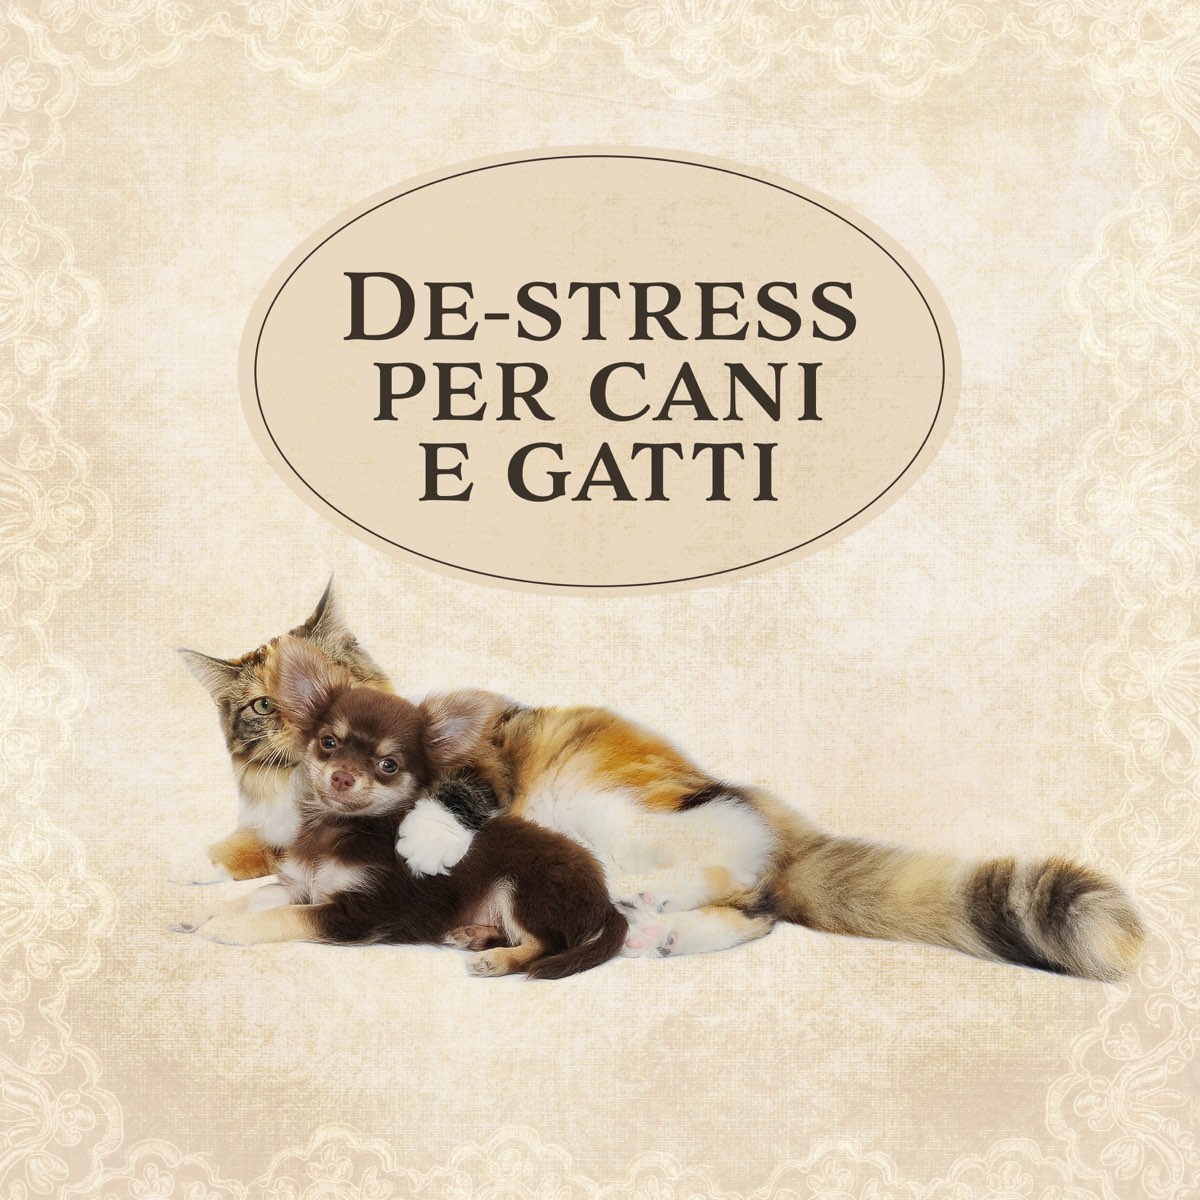 De-stress per cani e gatti: Musica rilassante per aiutare i tuoi animali a  calmarsi by Musica Terapeutica Naturale on Apple Music